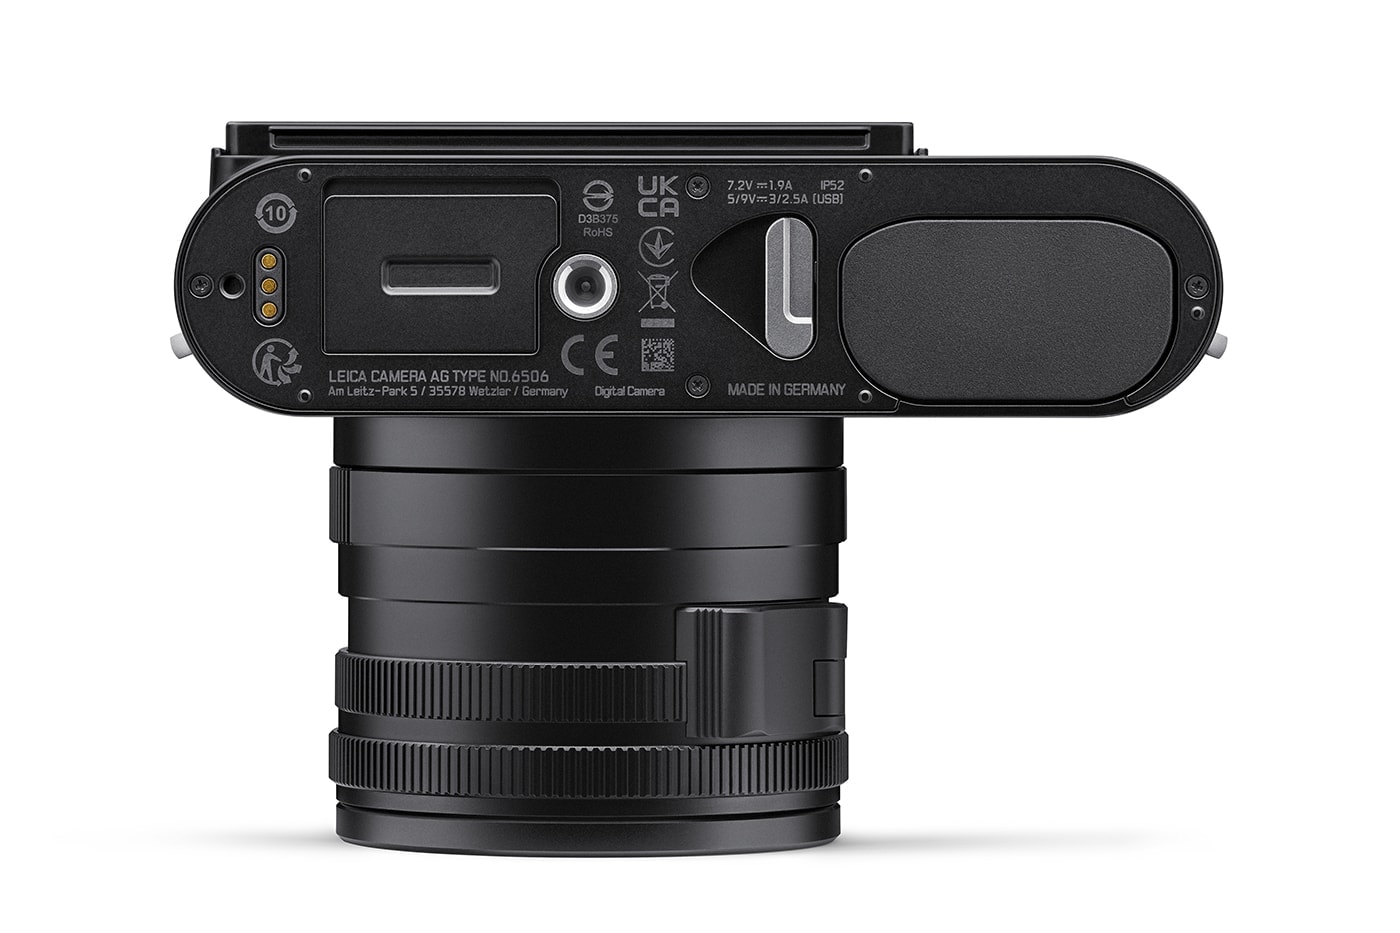 라이카의 새로운 콤팩트 카메라, Q3가 공개됐다